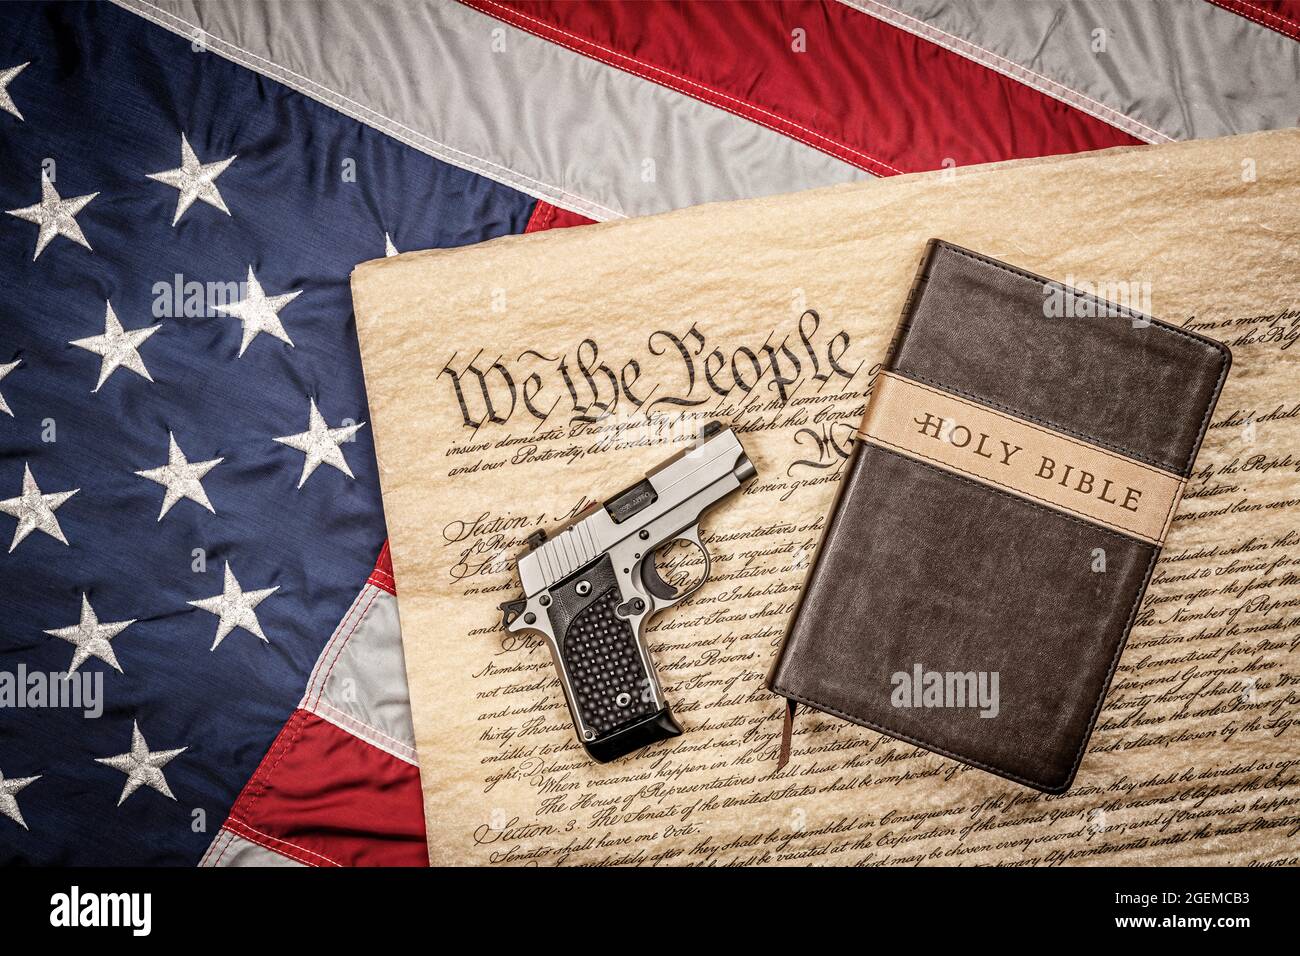 Eine heilige bibel und eine Handfeuerwaffe stehen auf der Verfassung der Vereinigten Staaten und der amerikanischen Flagge, die ein Sinnbild für Religionsfreiheit ohne Verfolgung ist. Stockfoto